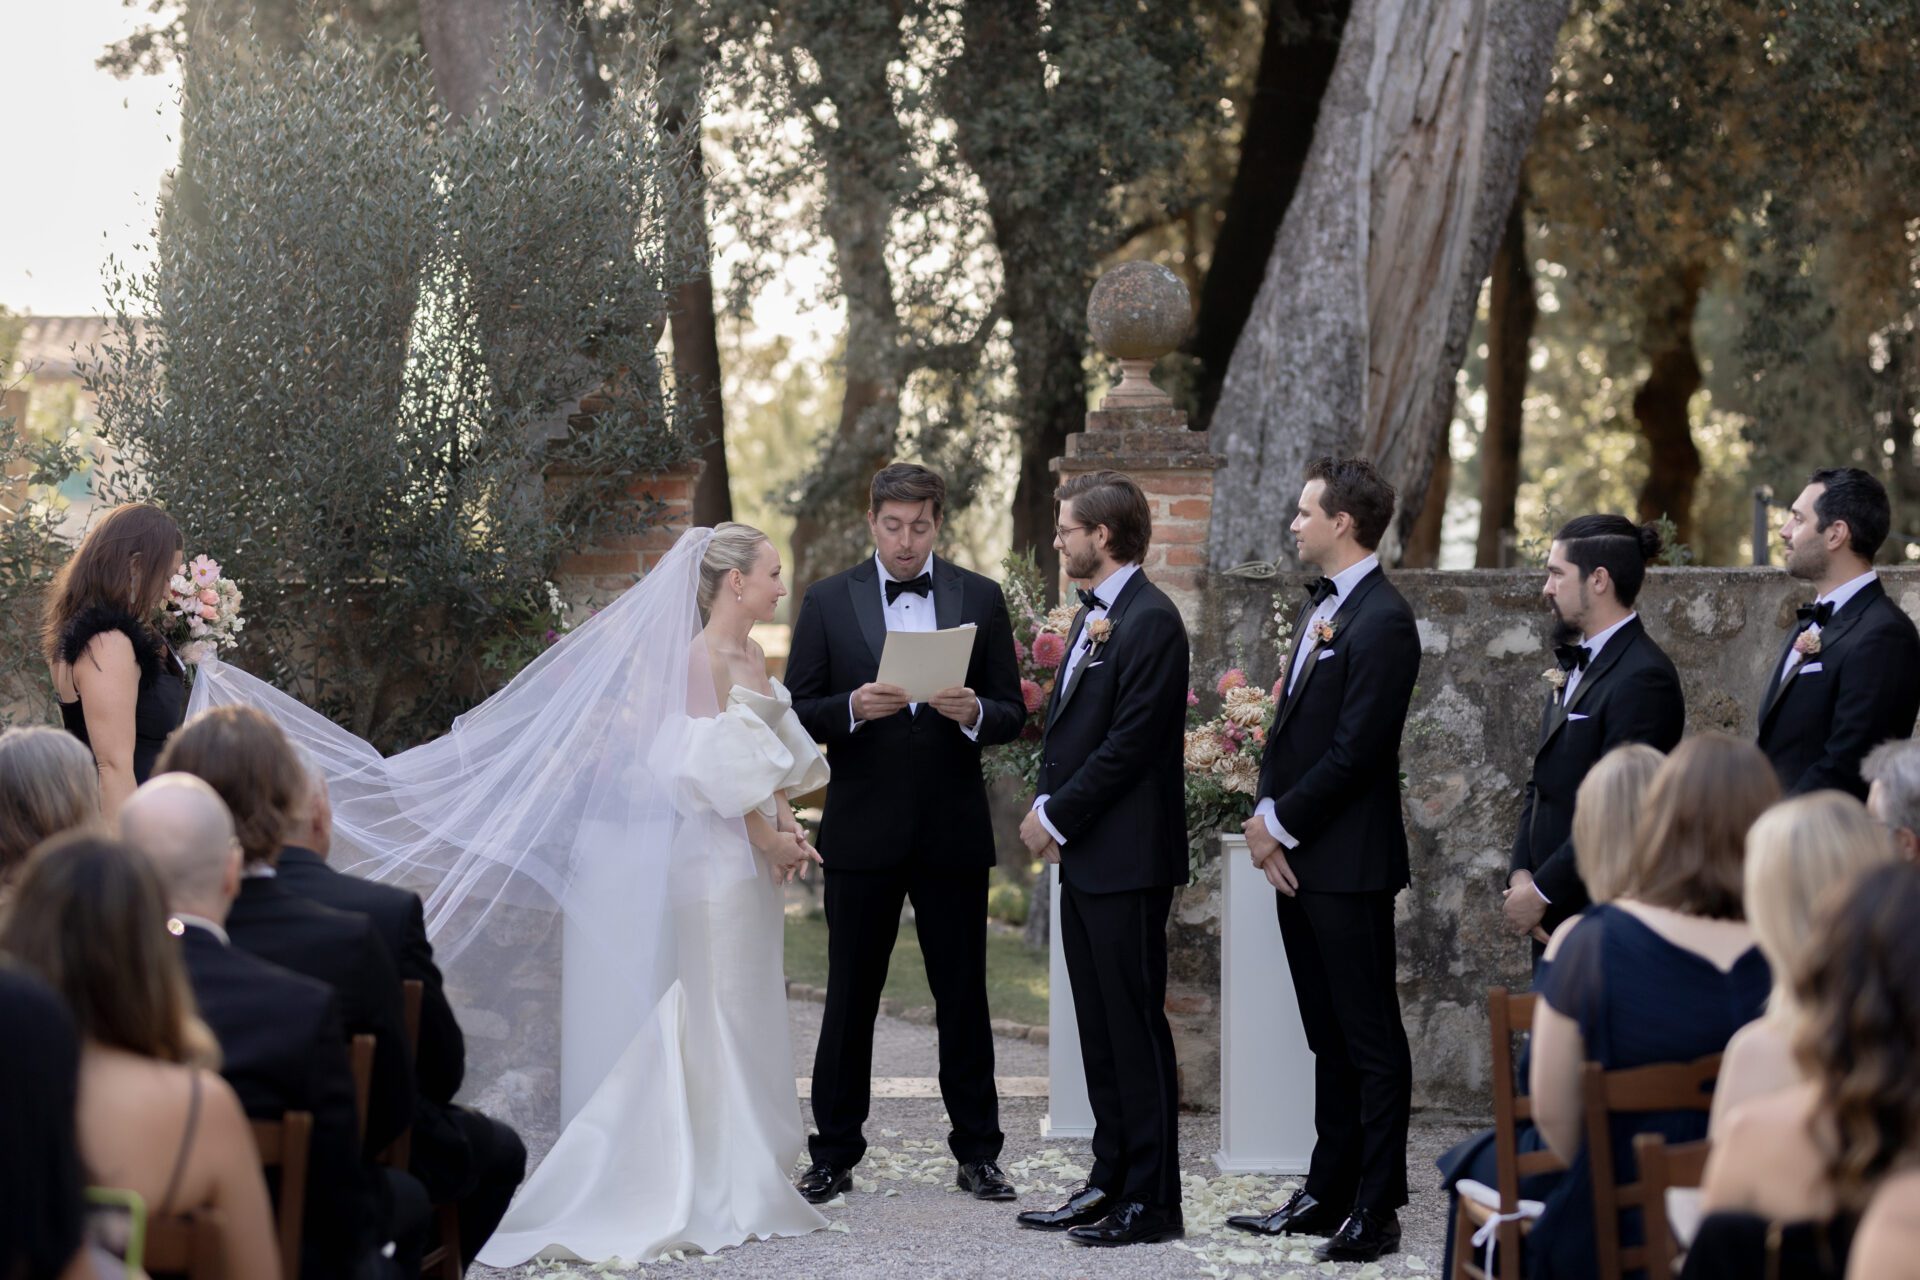 Italian wedding photography captures luxury Tuscan wedding ceremony